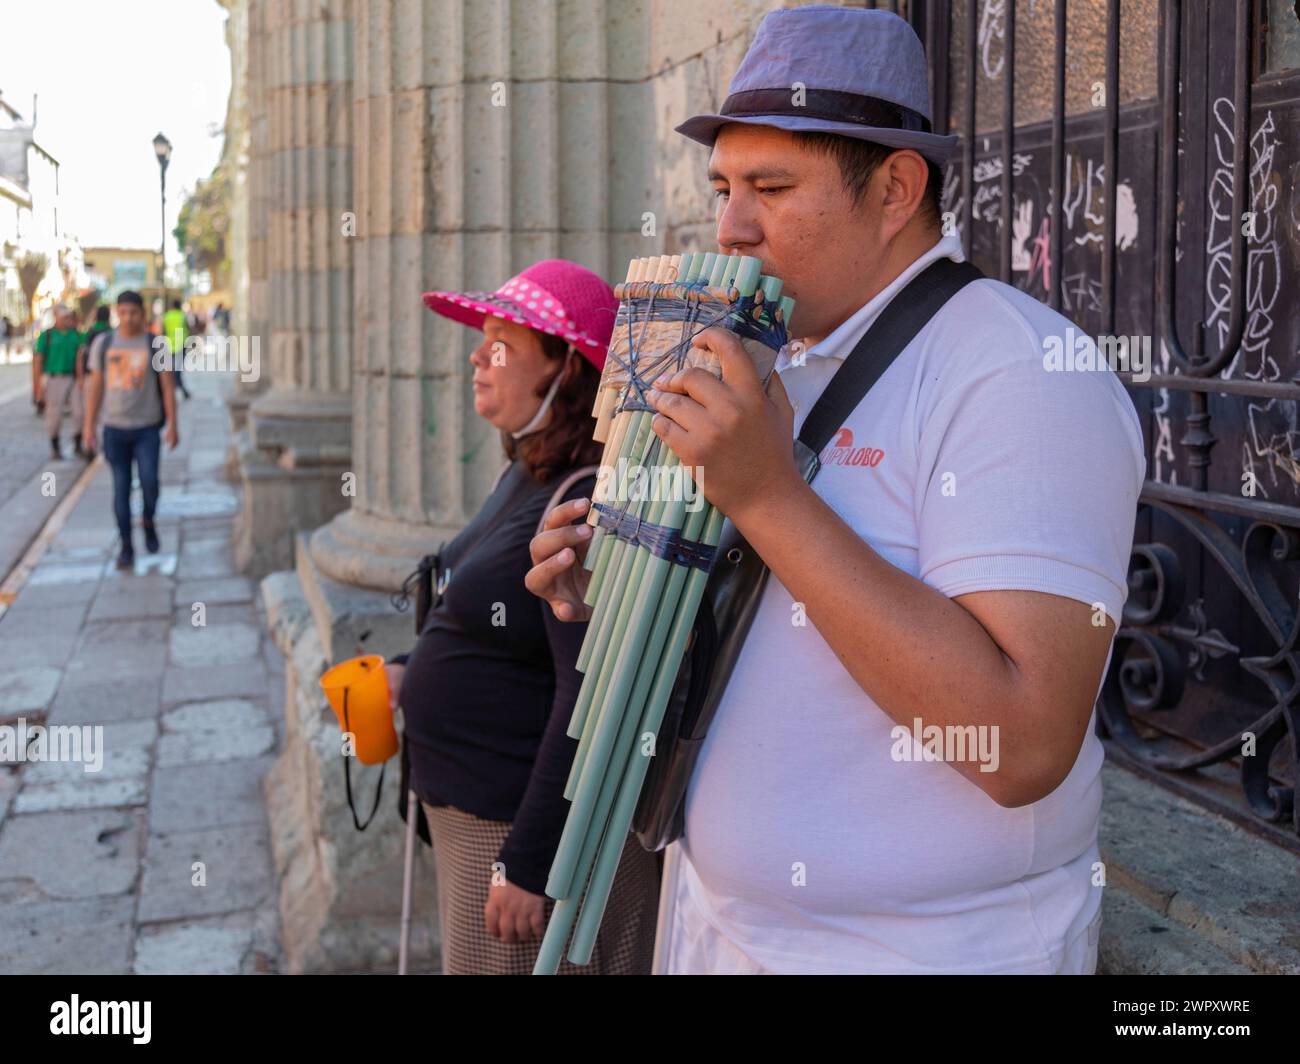 Oaxaca, México - Un hombre toca las cacerolas, mientras que una mujer ciega recoge propinas. Están en la Alcalá, una calle peatonal. Foto de stock